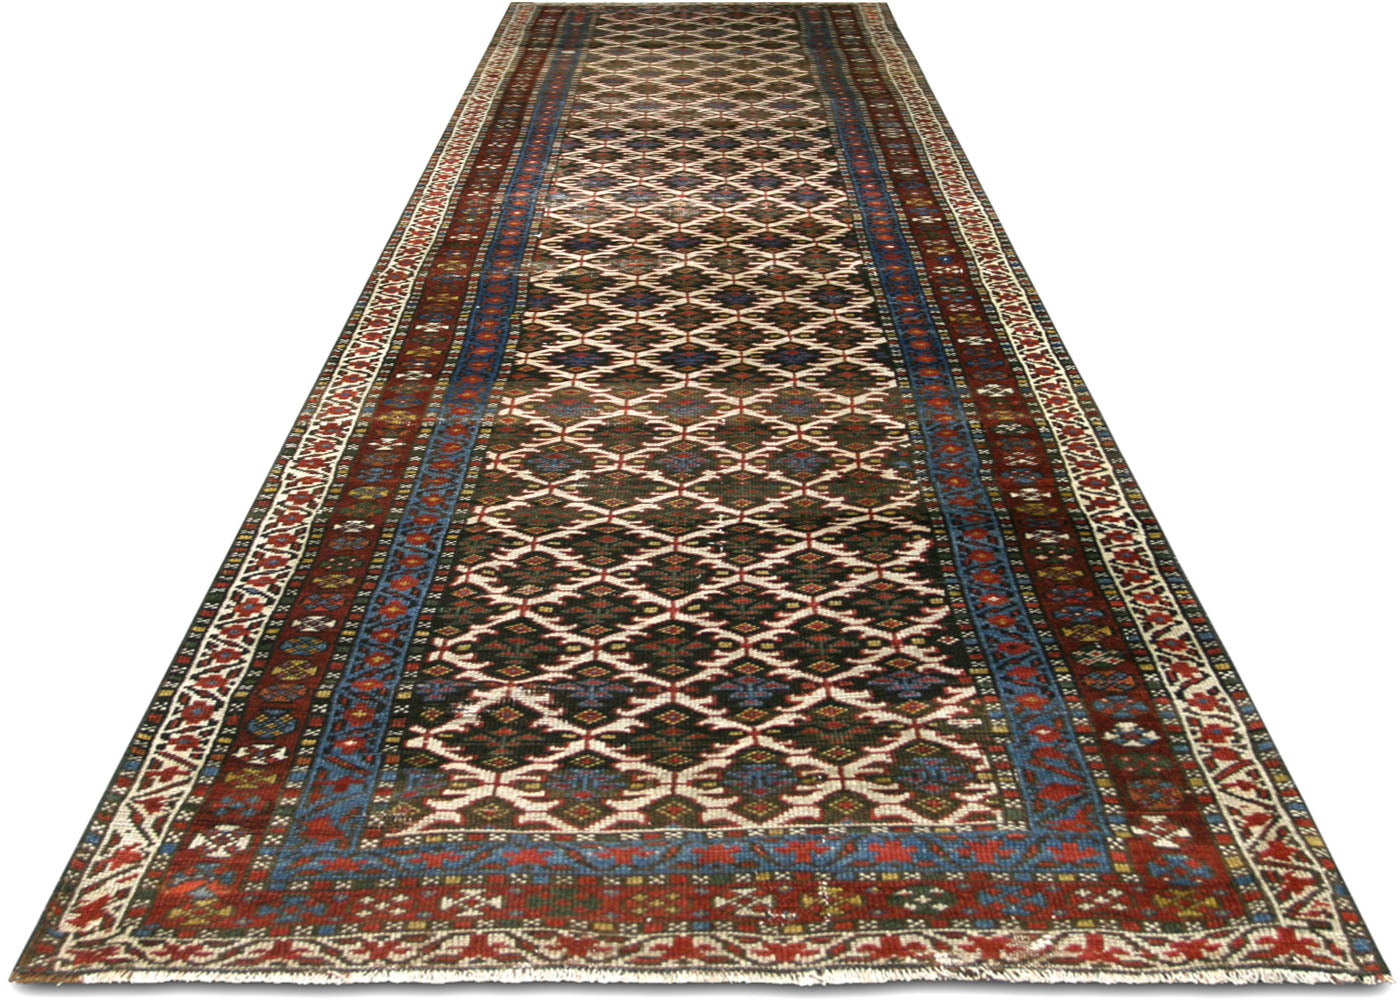 Antique Persian Heriz Runner - 3'1" x 14'